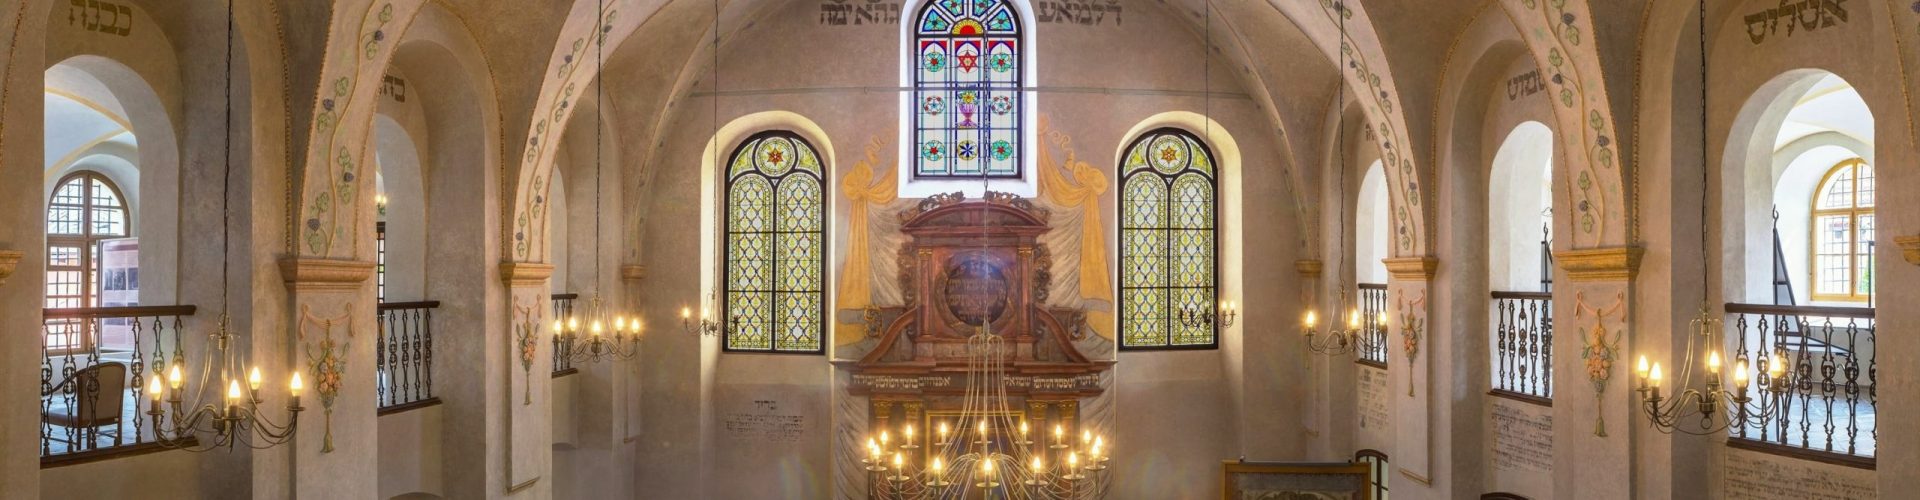 Svatostánek zvaný aron hakodeš v Synagoze v Kolíně